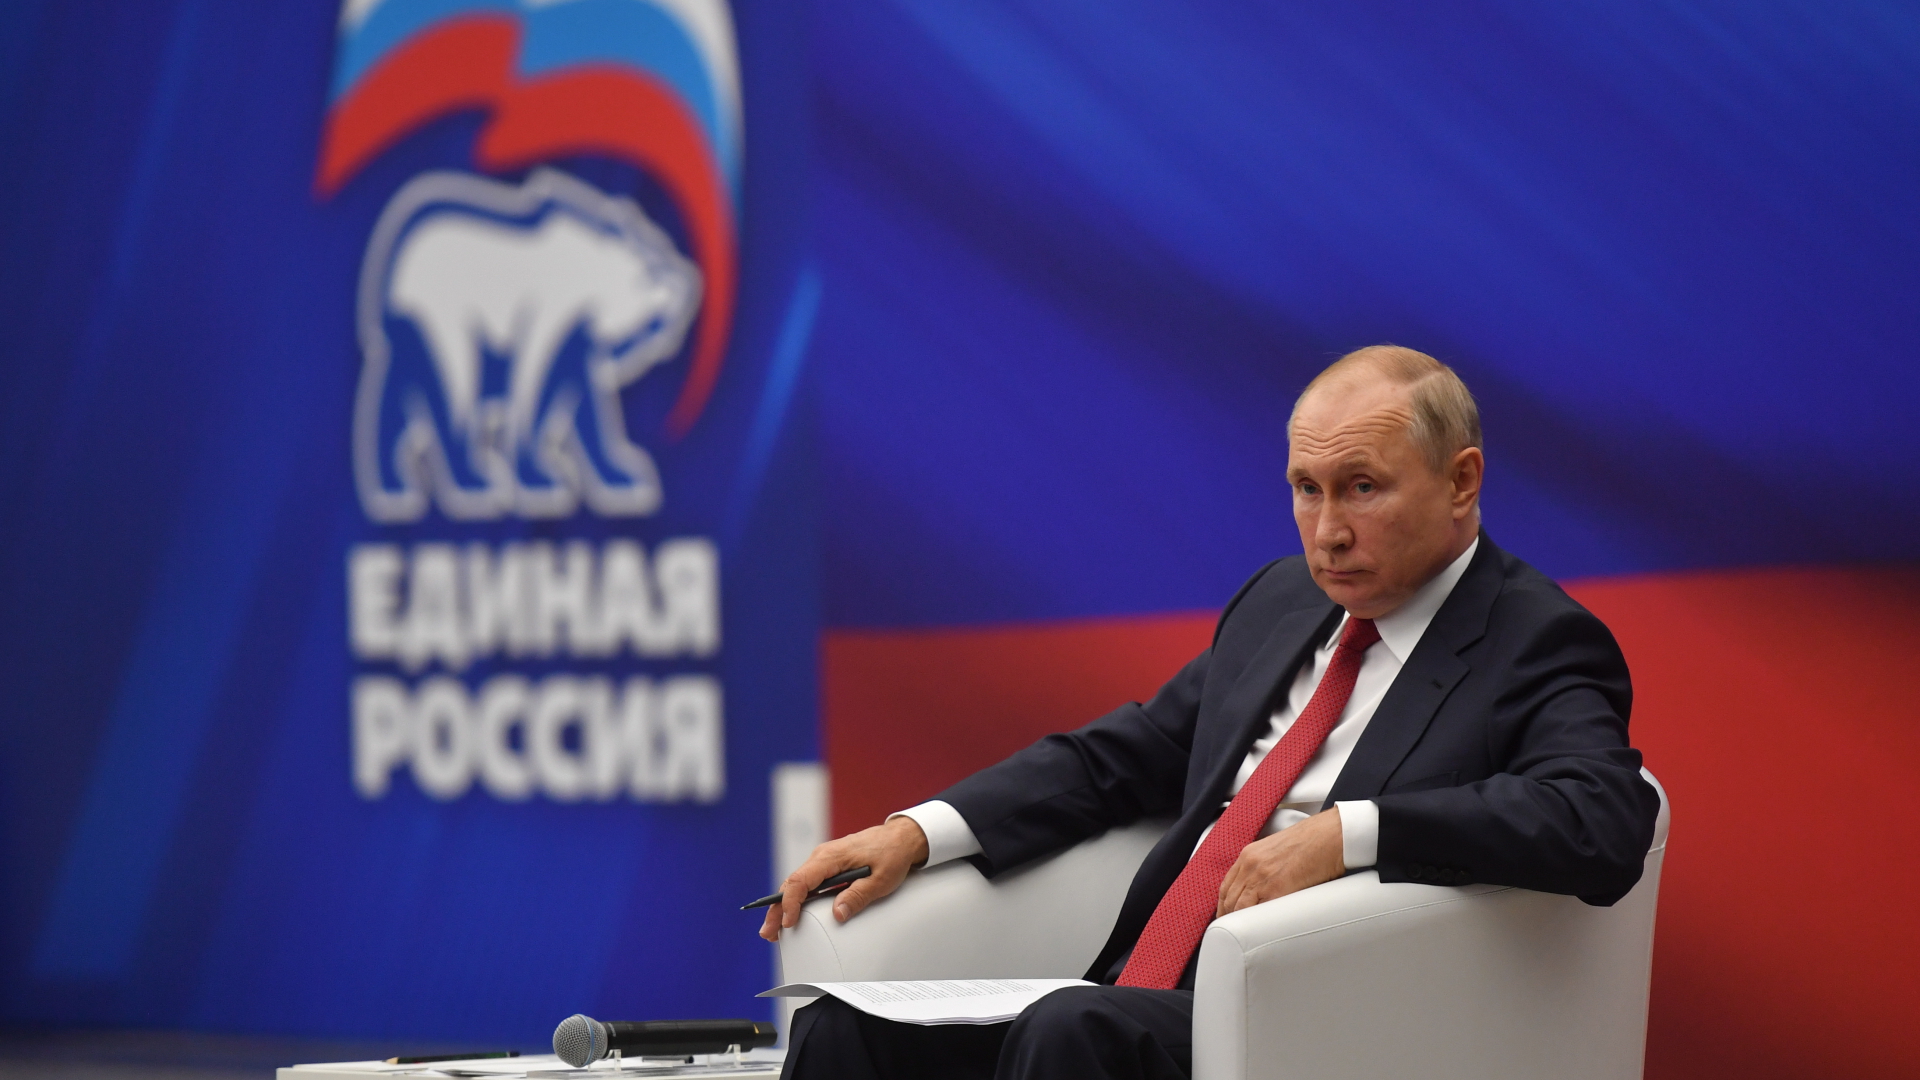 Wladimir Putin auf dem Parteitag der Partei "Geeintes Russland" | EPA